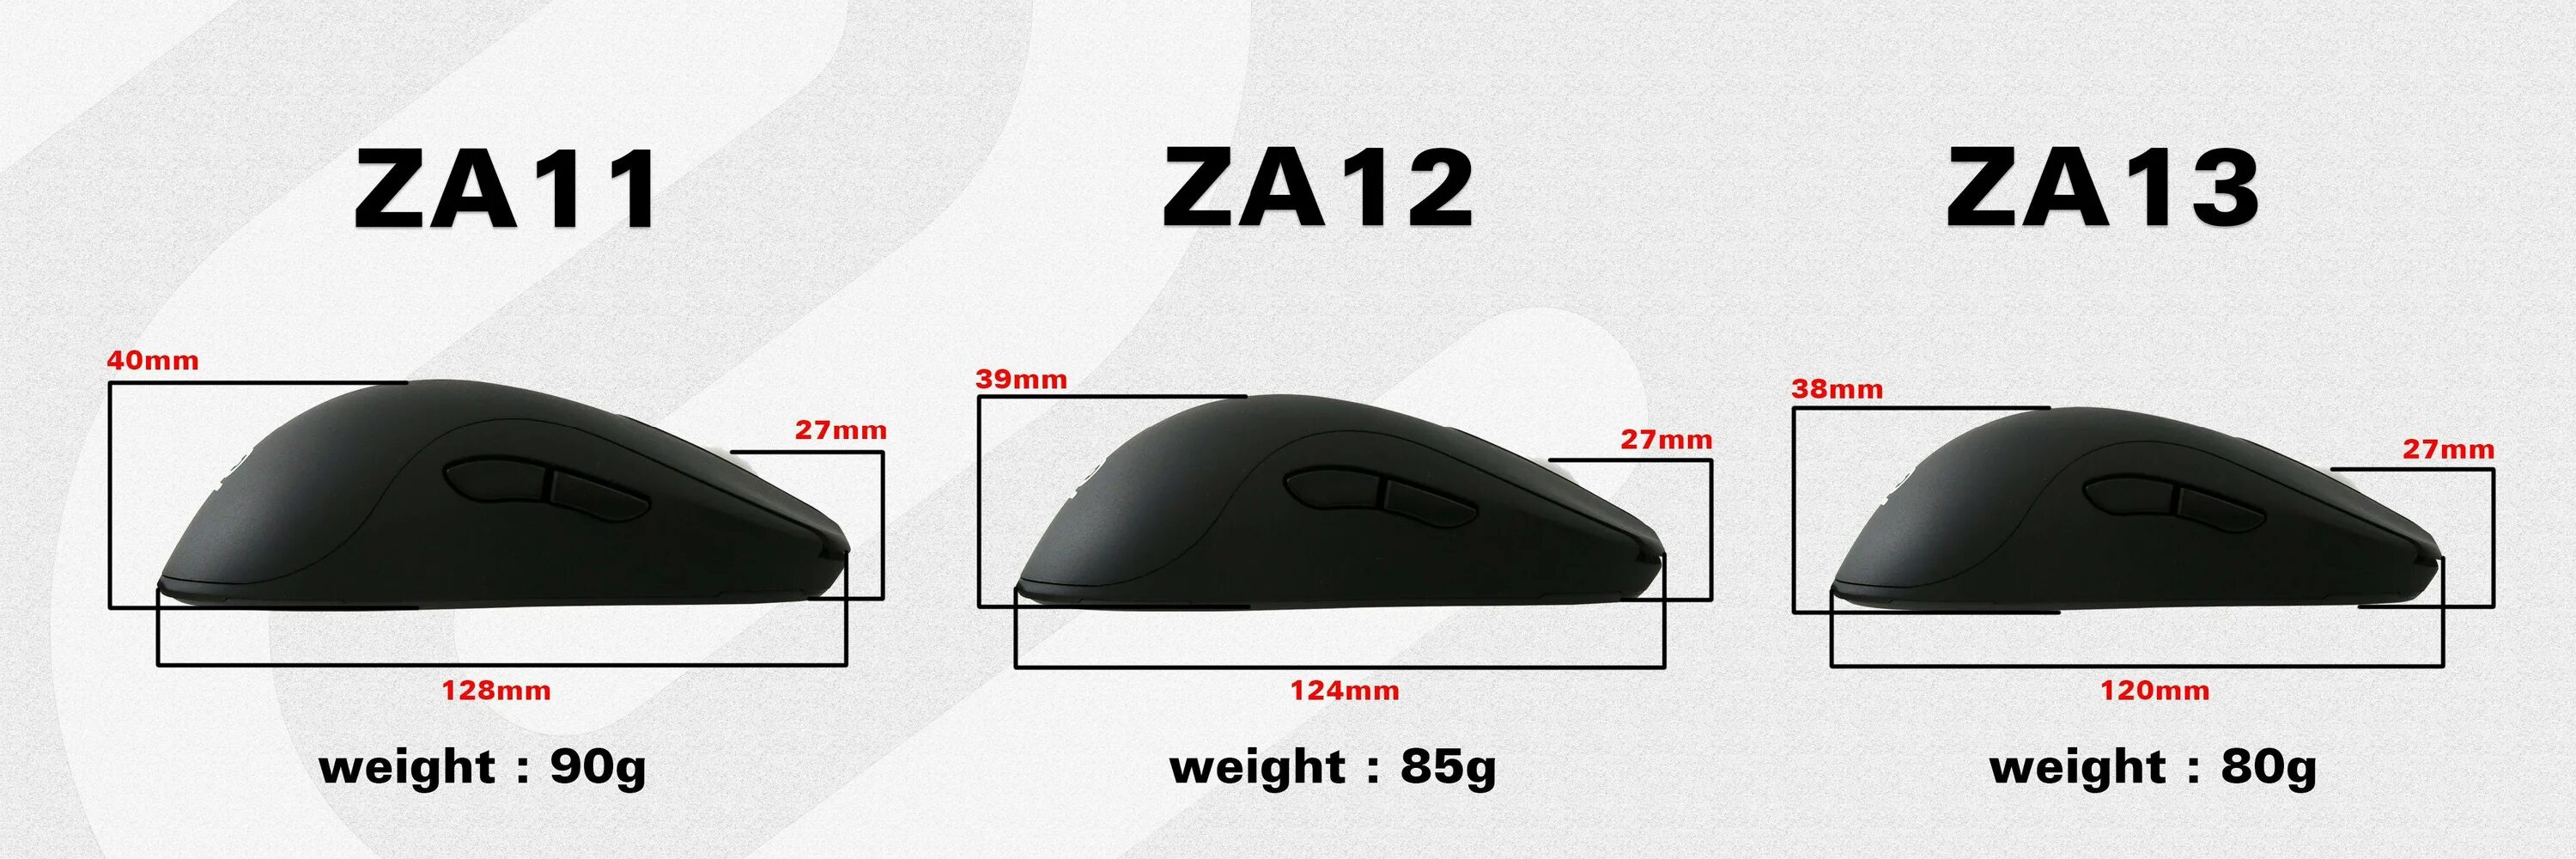 Za 13. Мышь: Zowie Gear za13. Zowie fk1 Размеры. Za 13 мышь. Высота отрыва Zowie.